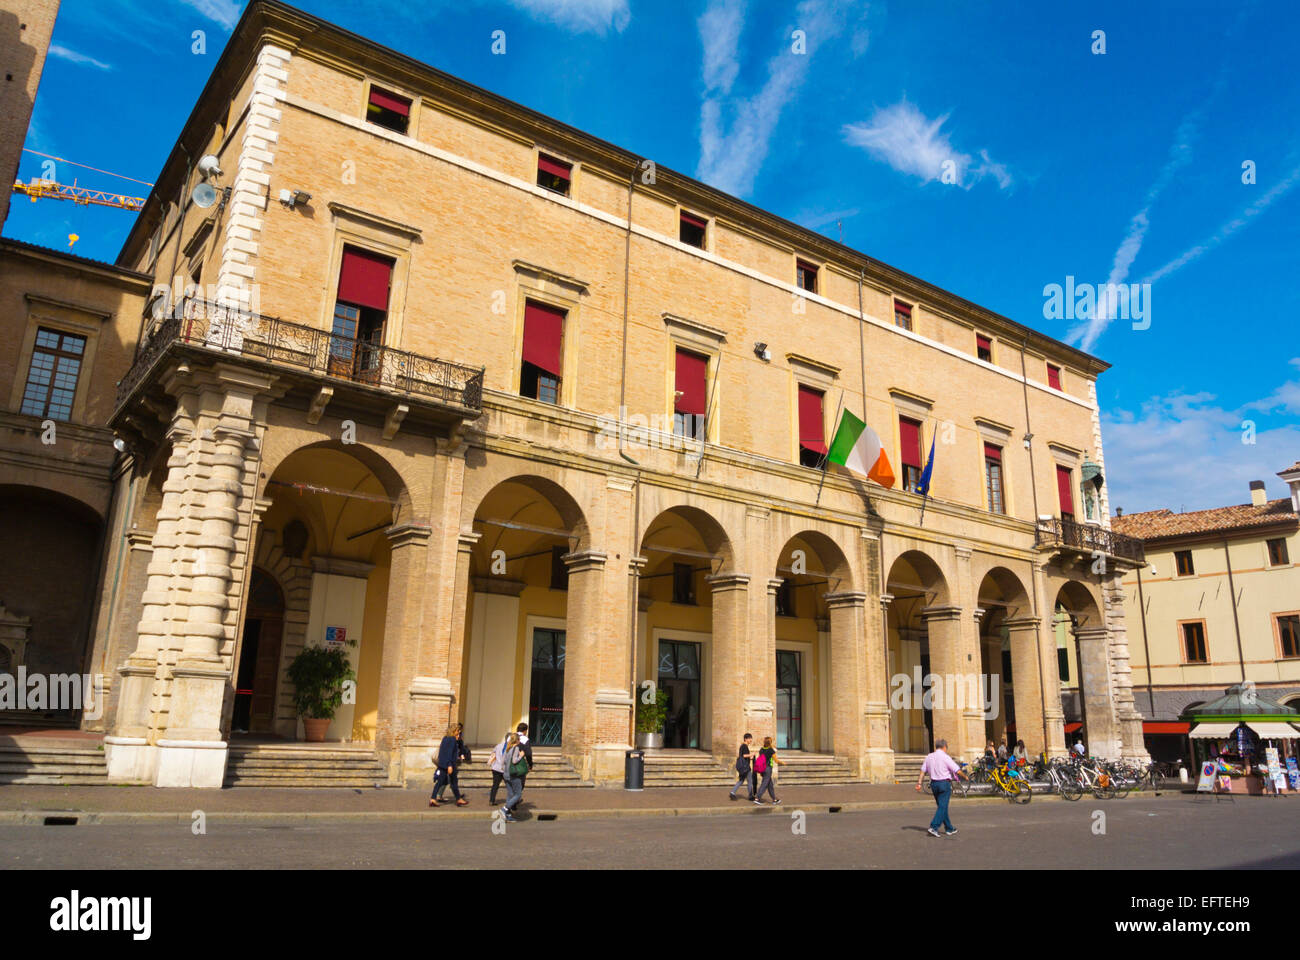 Palazzo del Municipio, town hall (1562), Piazza Cavour, Centro storico, historical Rimini, Emilia Romagna region, Italy Stock Photo